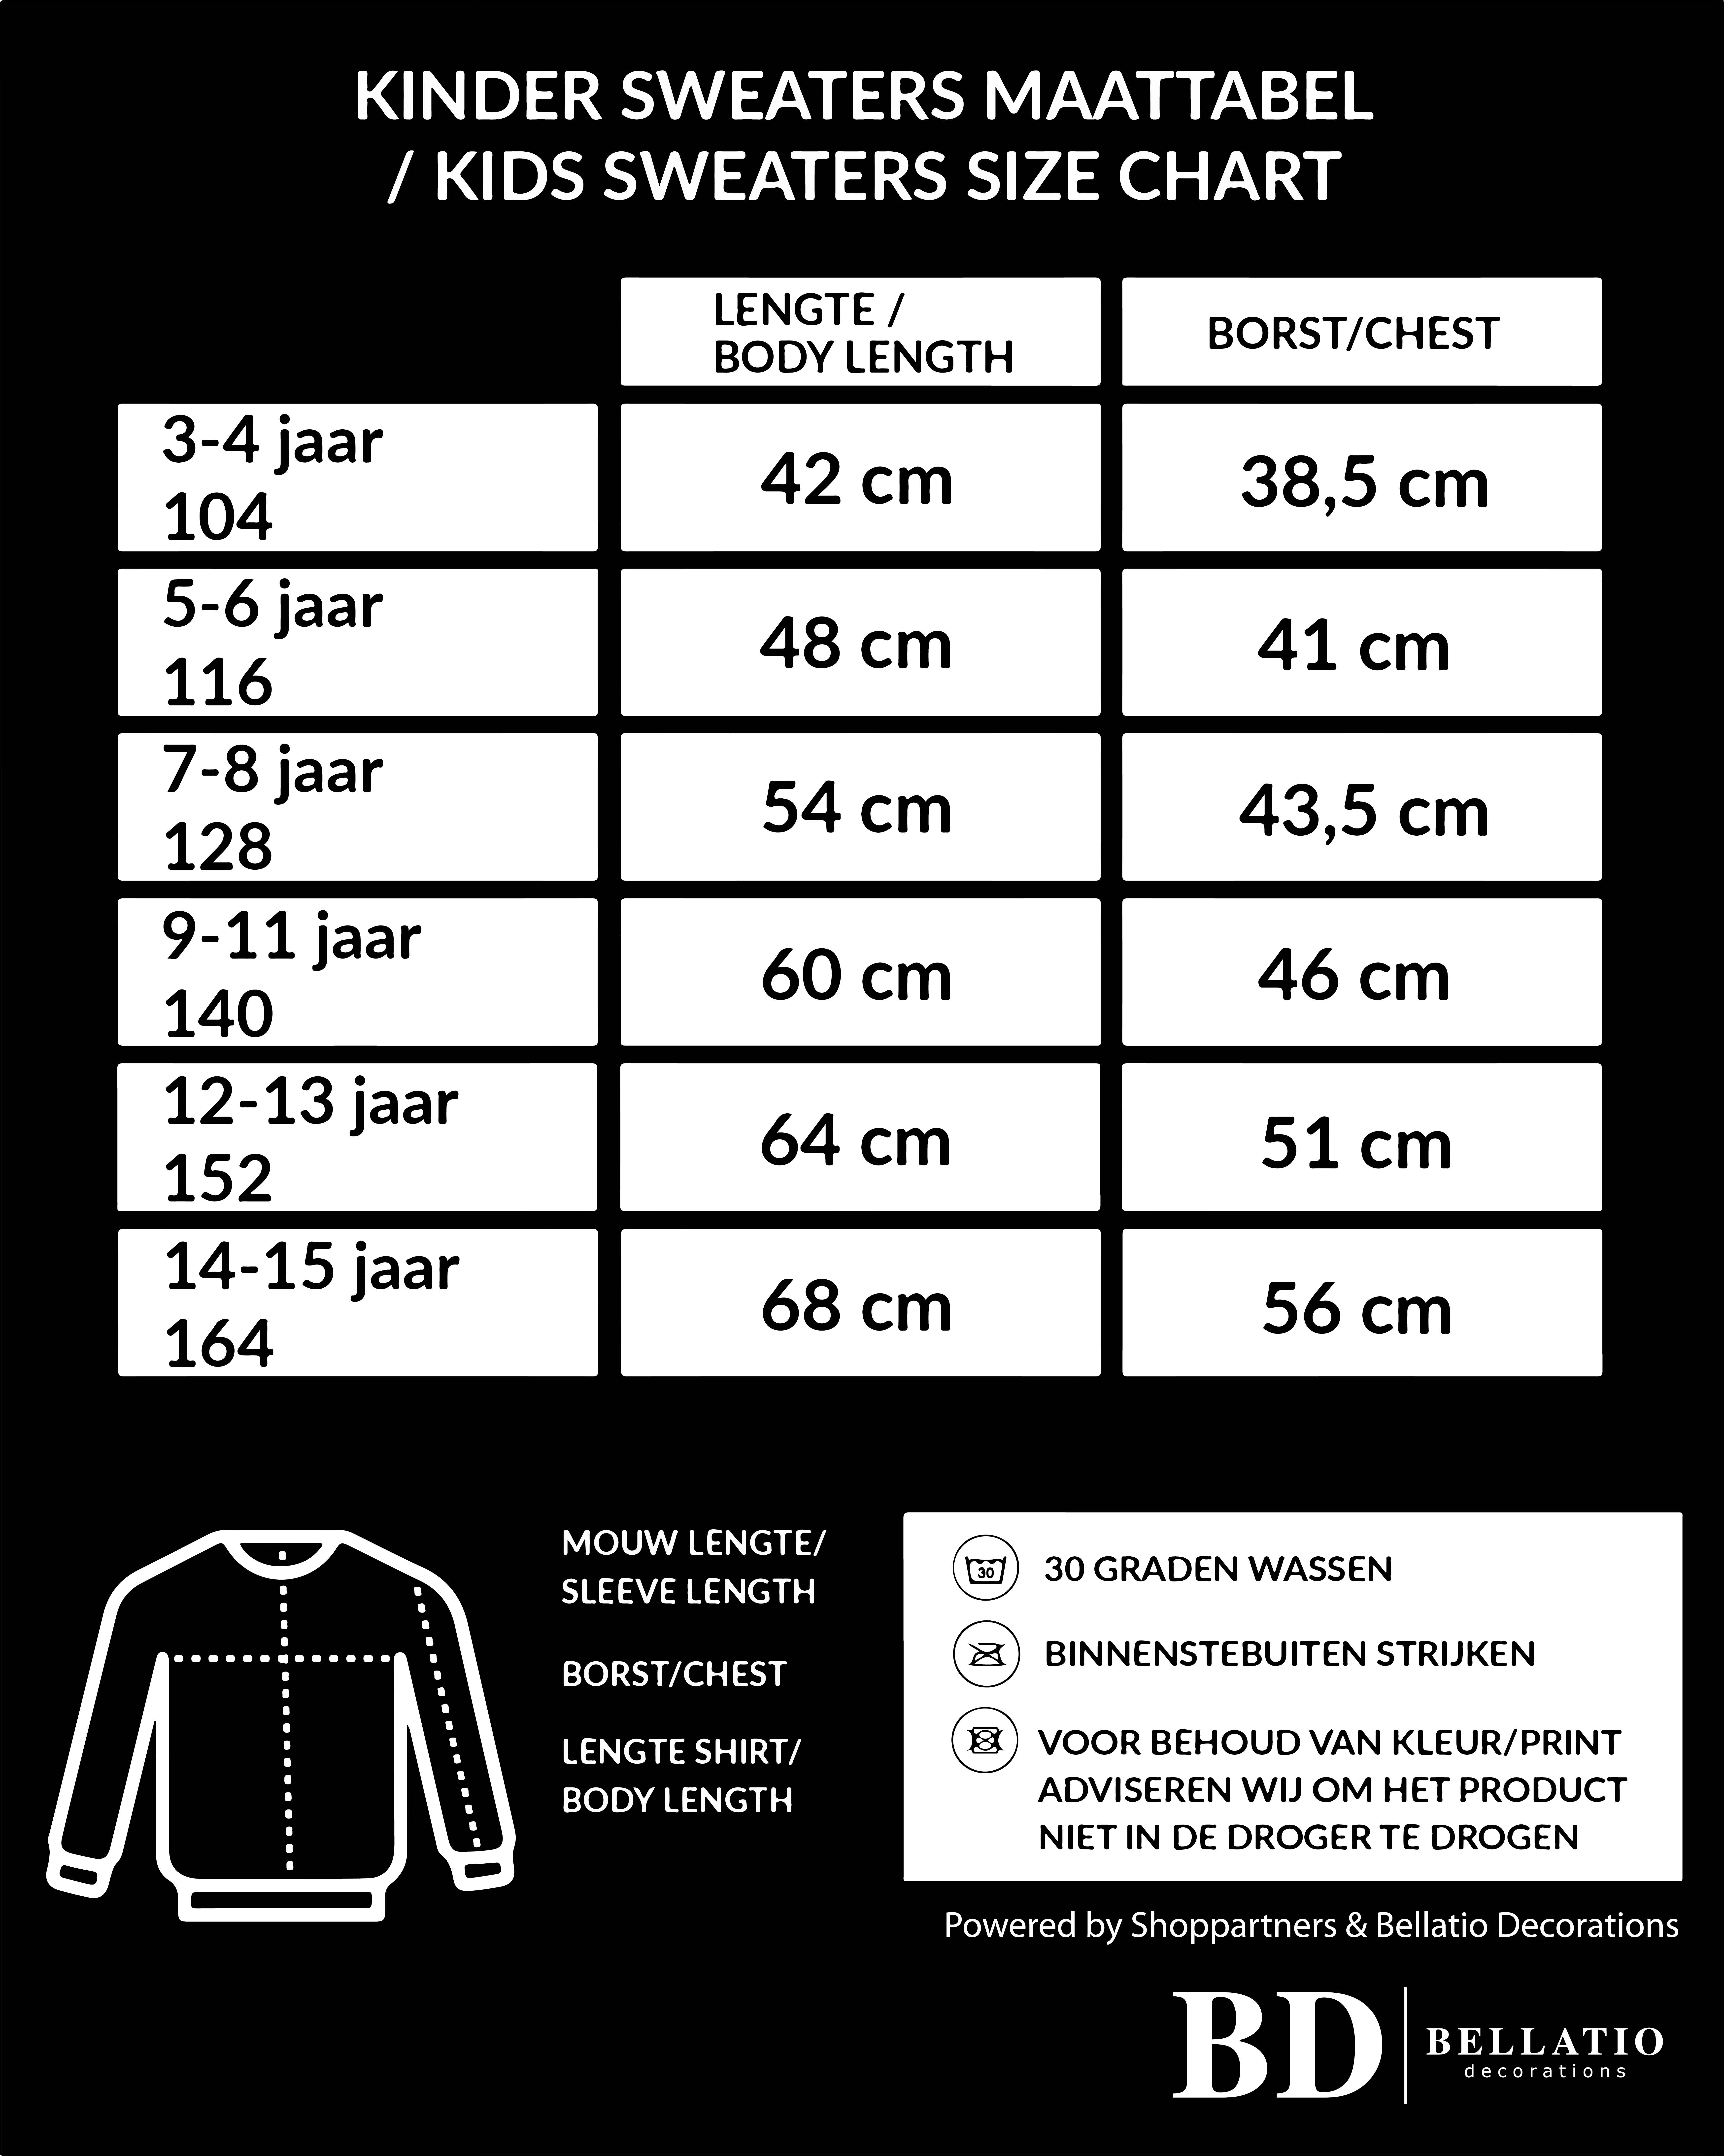 Glitter Holland sweater zwart rhinestone steentjes voor kinderen Nederland supporter EK/ WK